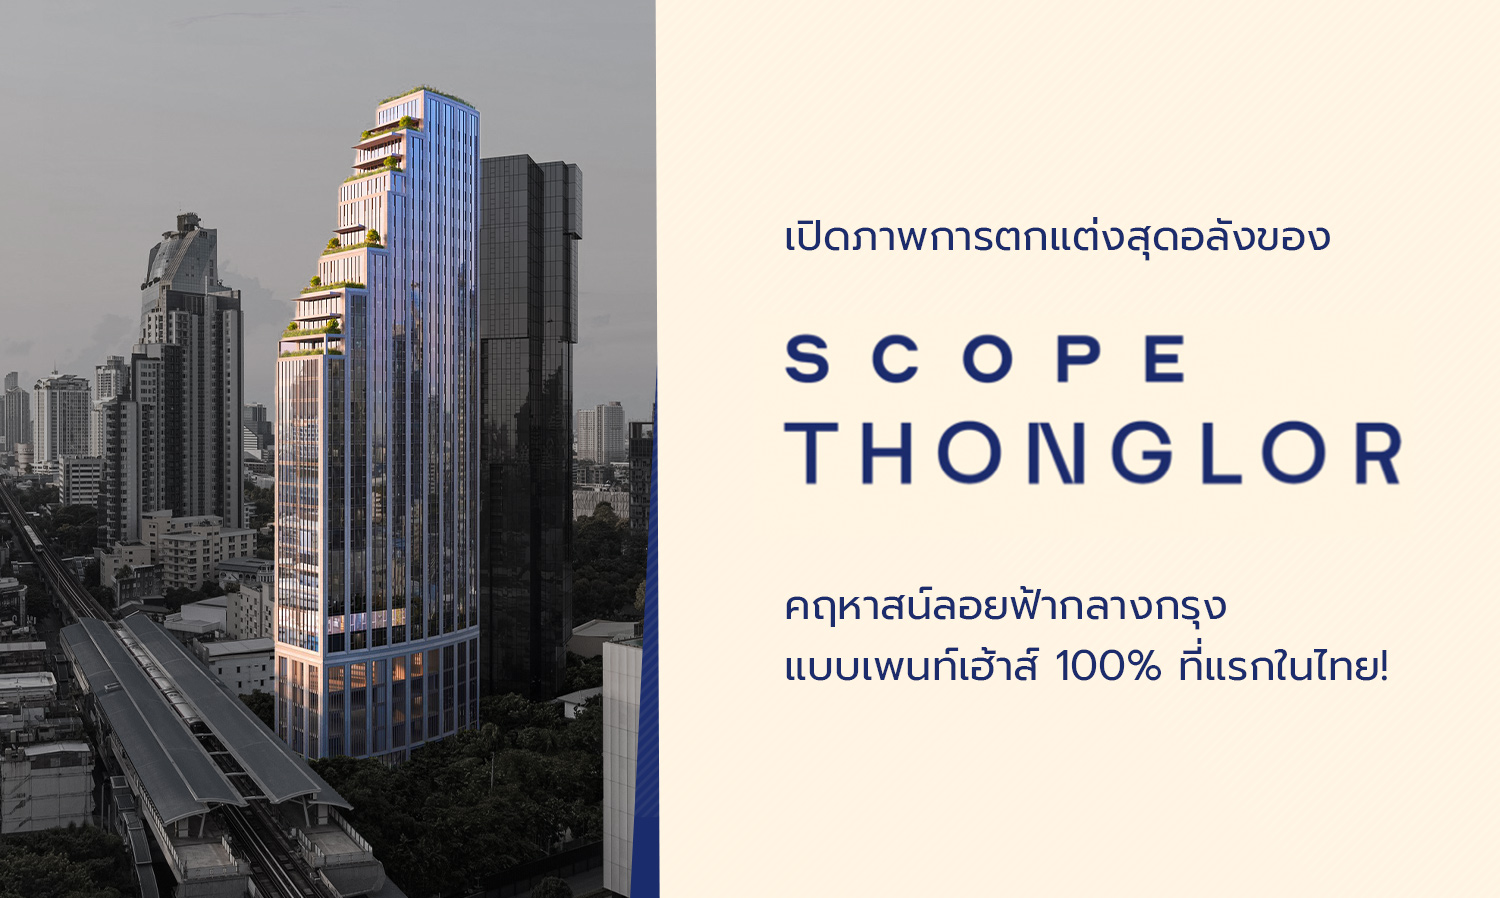 เปิดภาพการตกแต่งสุดอลังของ Scope Thonglor คฤหาสน์ลอยฟ้ากลางกรุง แบบเพนท์เฮ้าส์ 100% ที่แรกในไทย